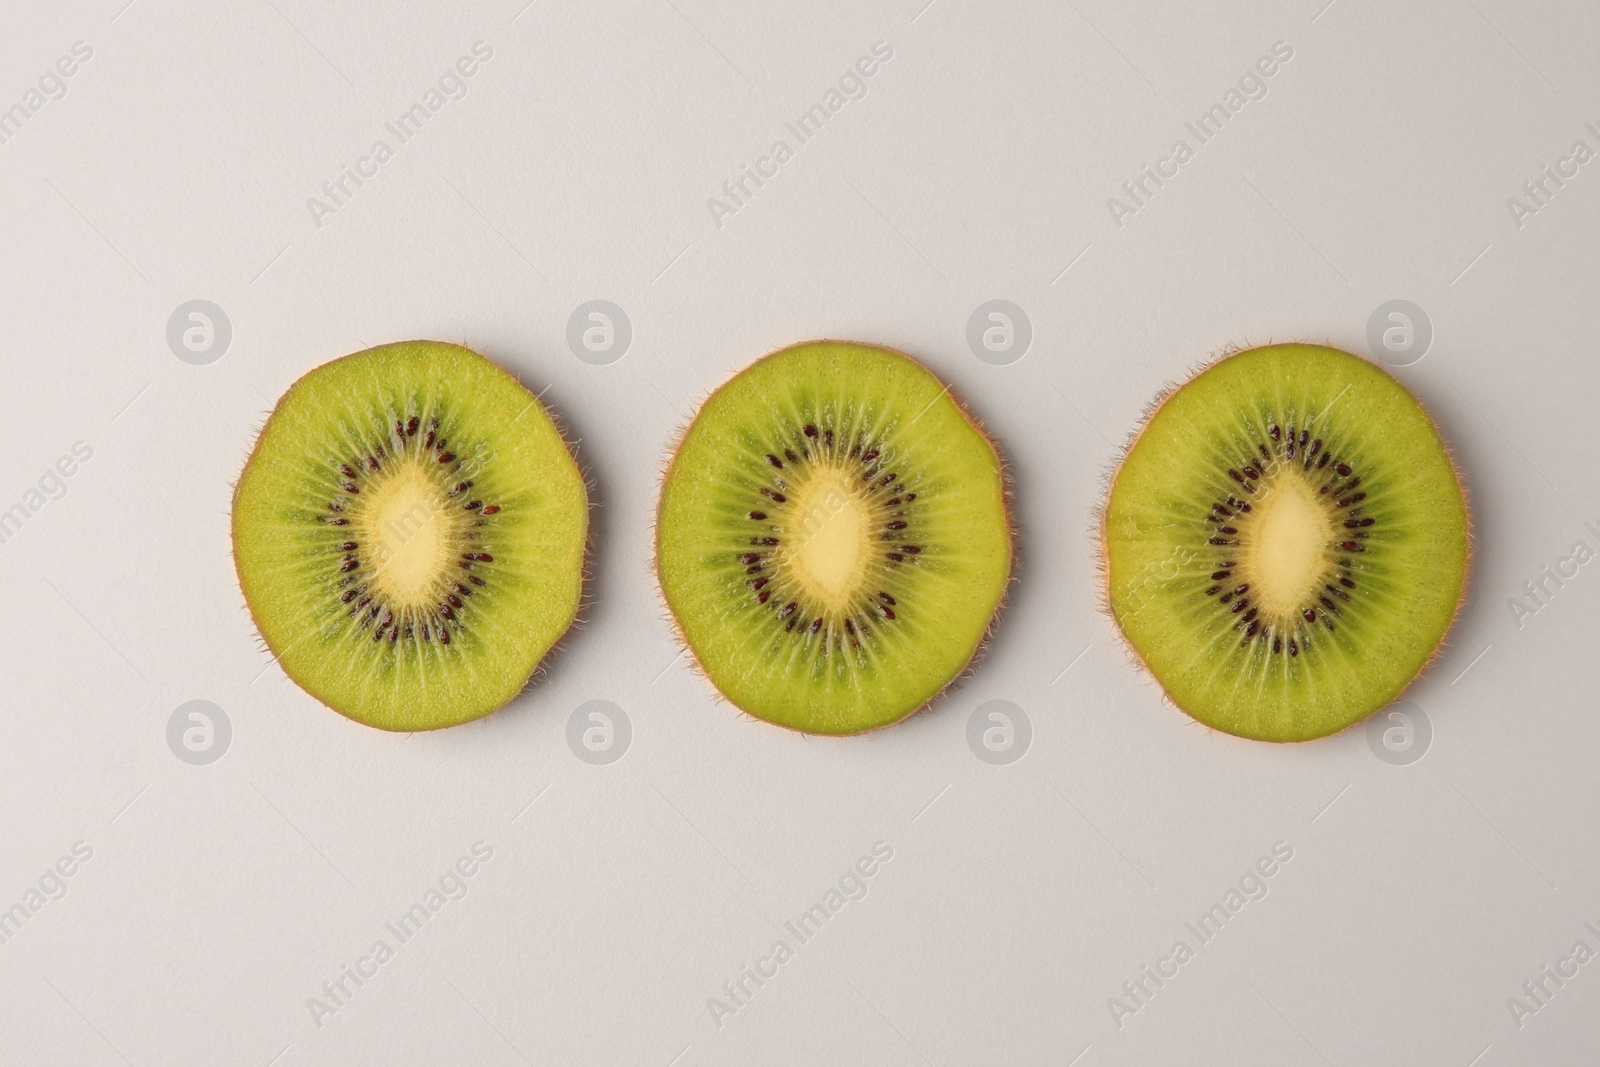 Photo of Cut fresh ripe kiwis on white background, flat lay